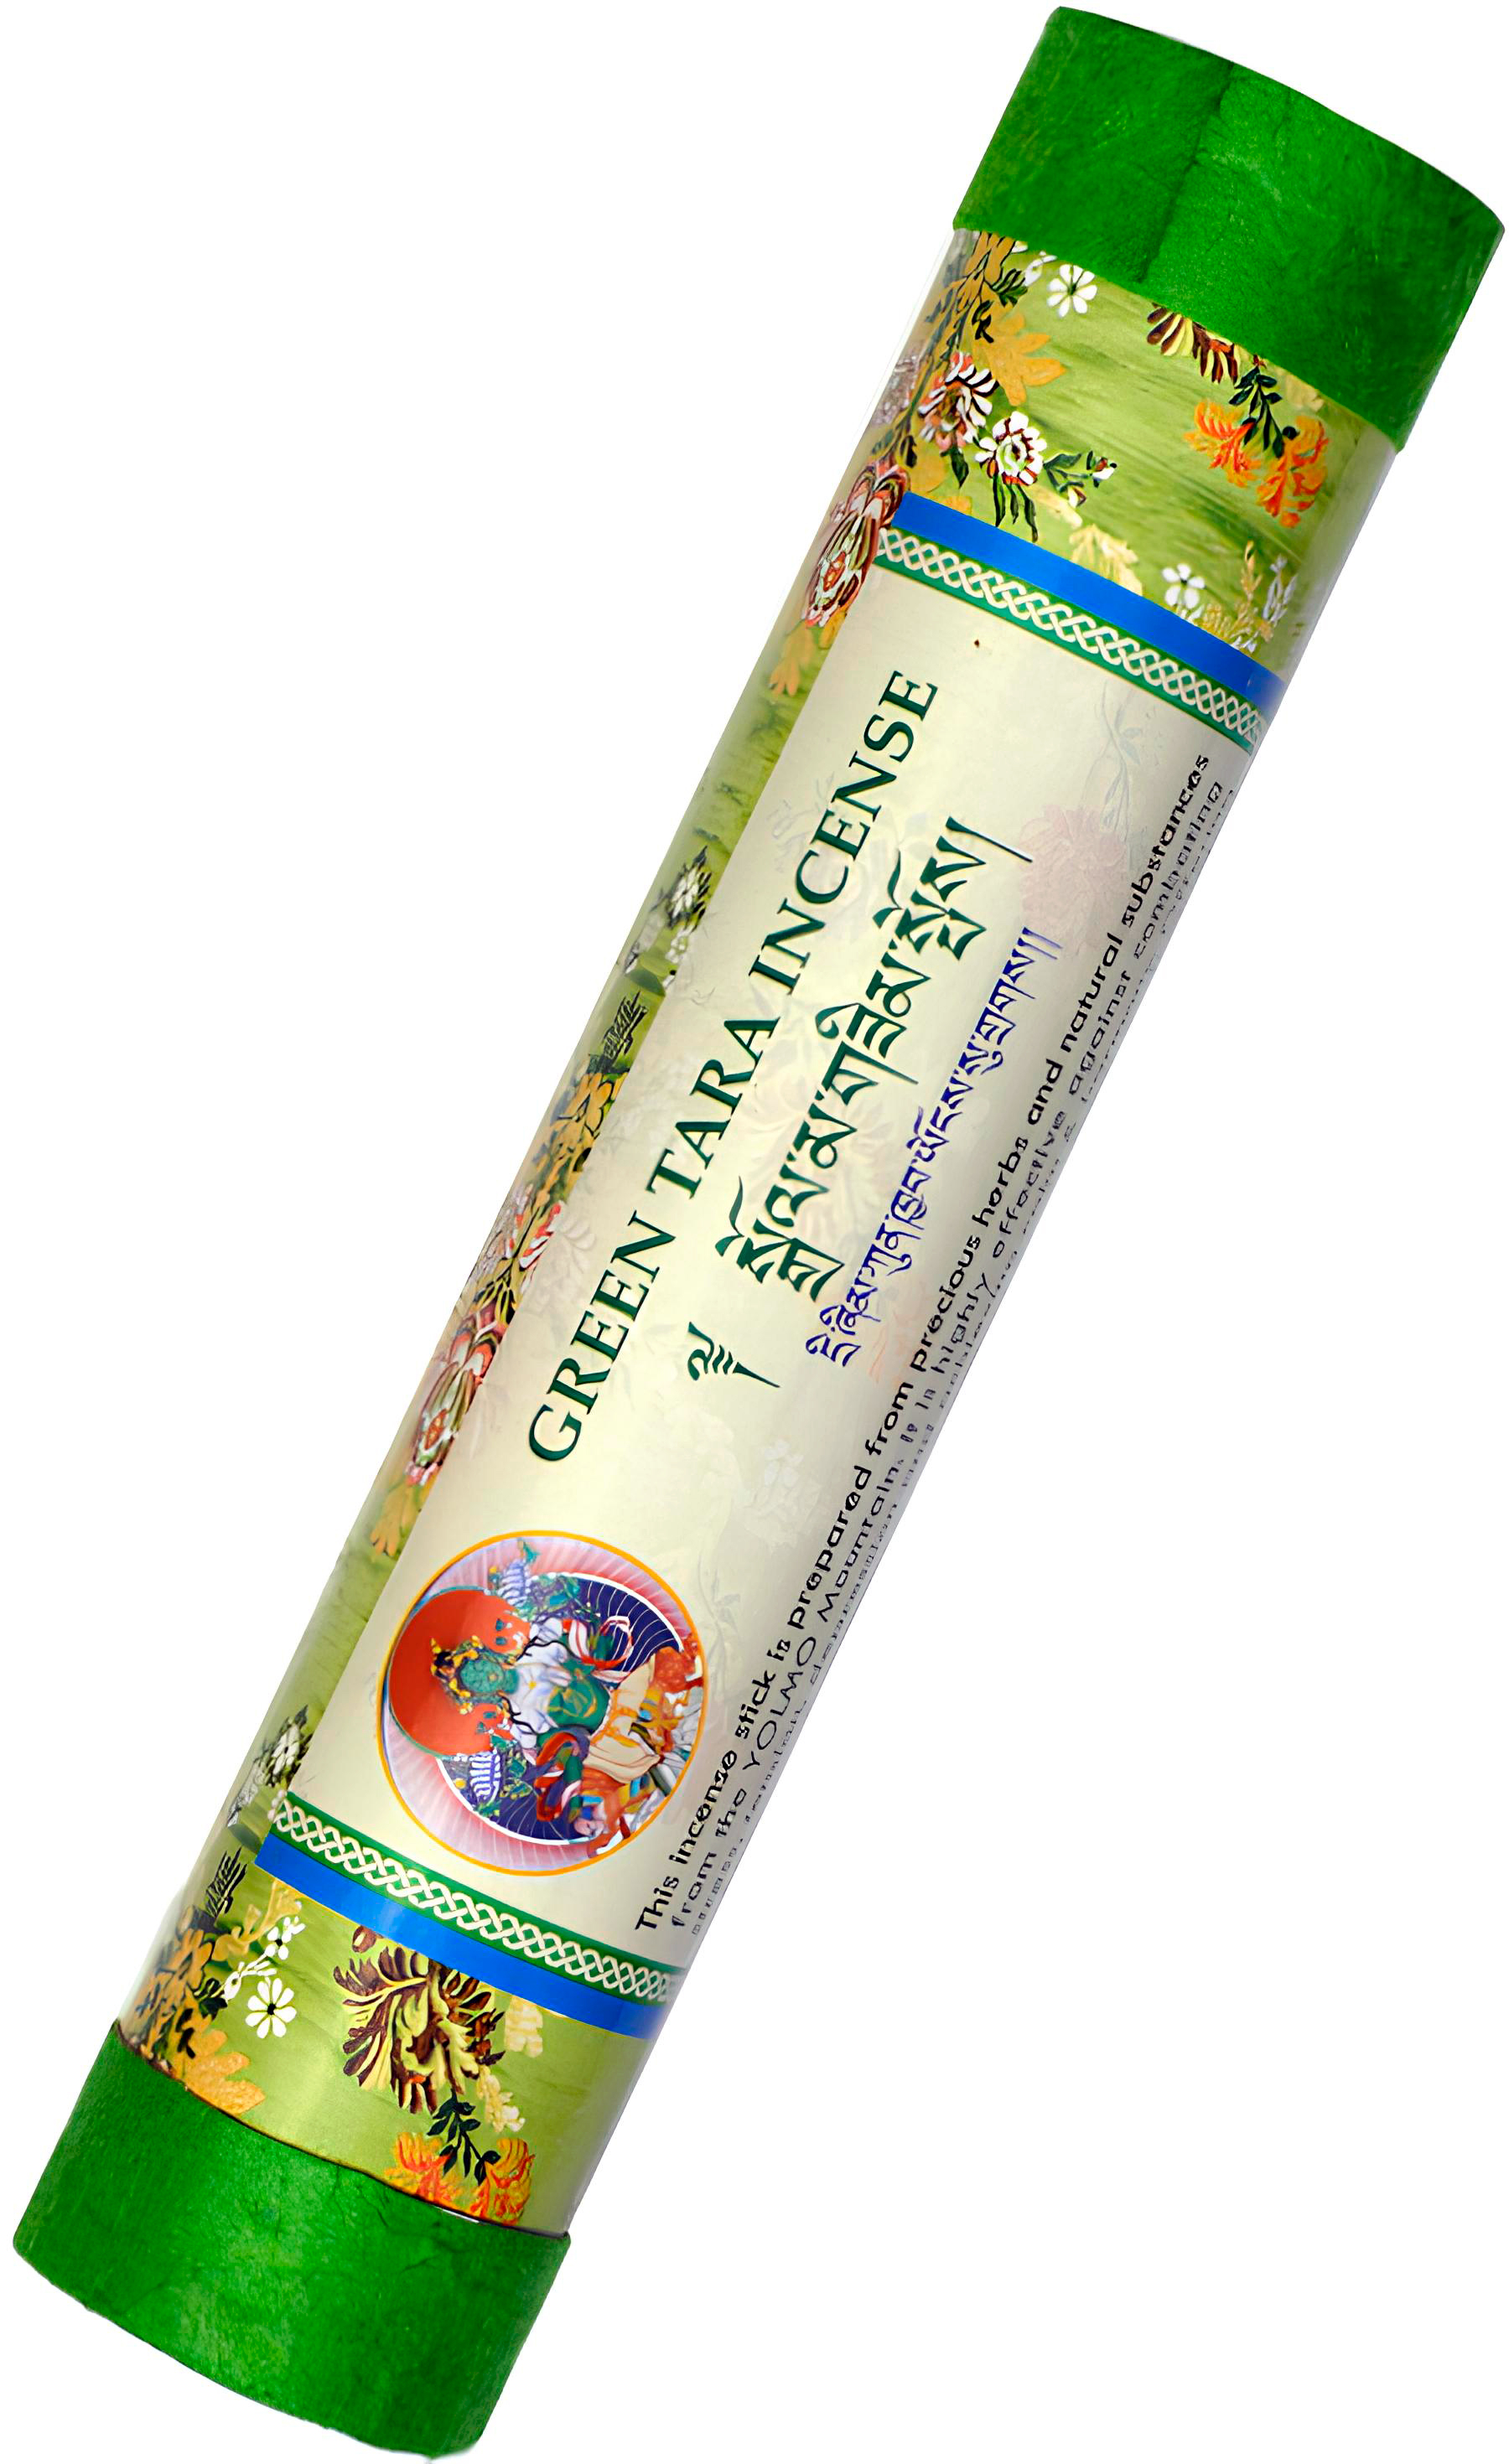 Благовоние Green Tara (Зеленая Тара), 33 палочки по 19 см